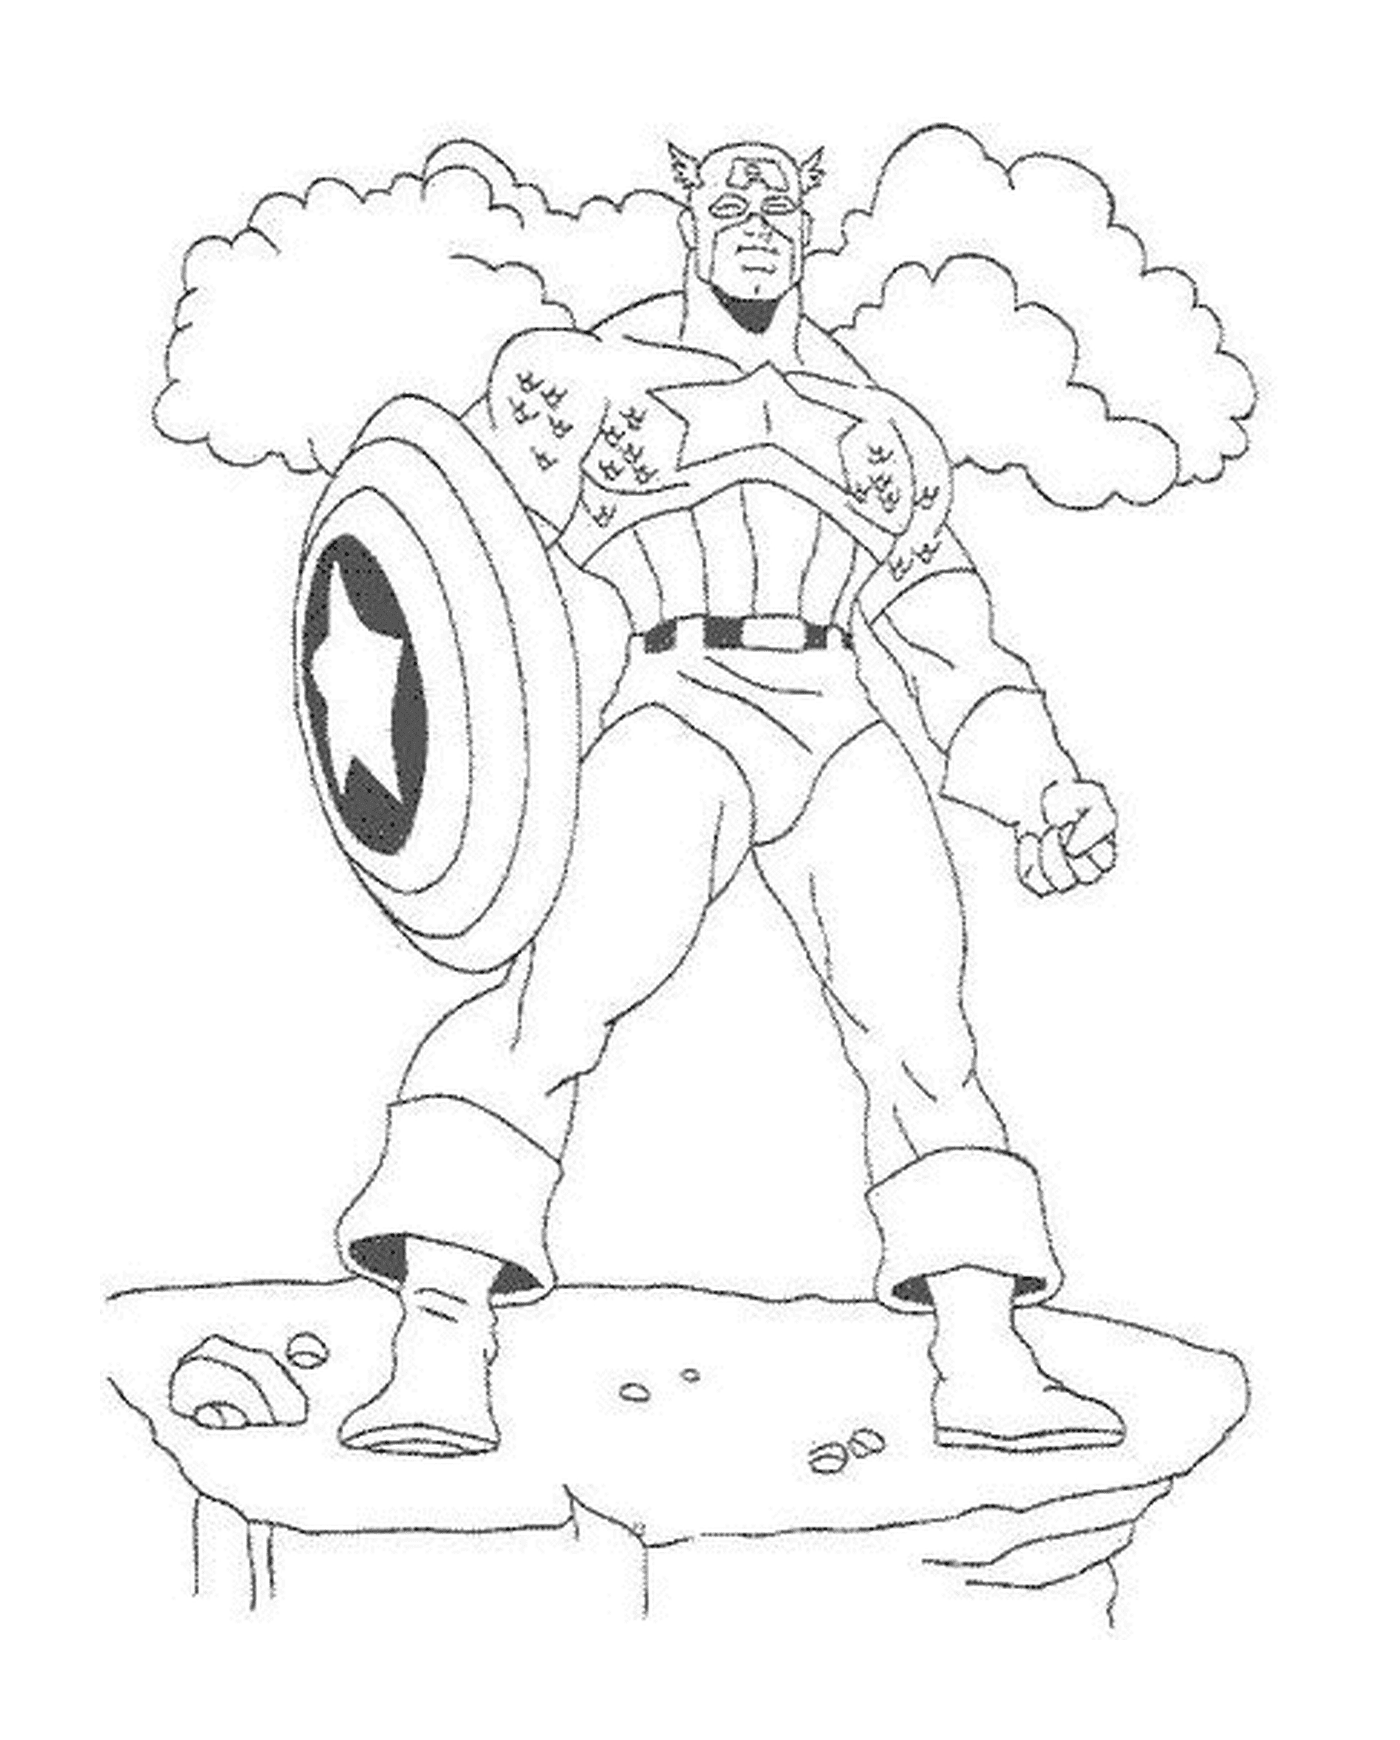   Captain America avec son bouclier en vibranium, image d'un Captain America 